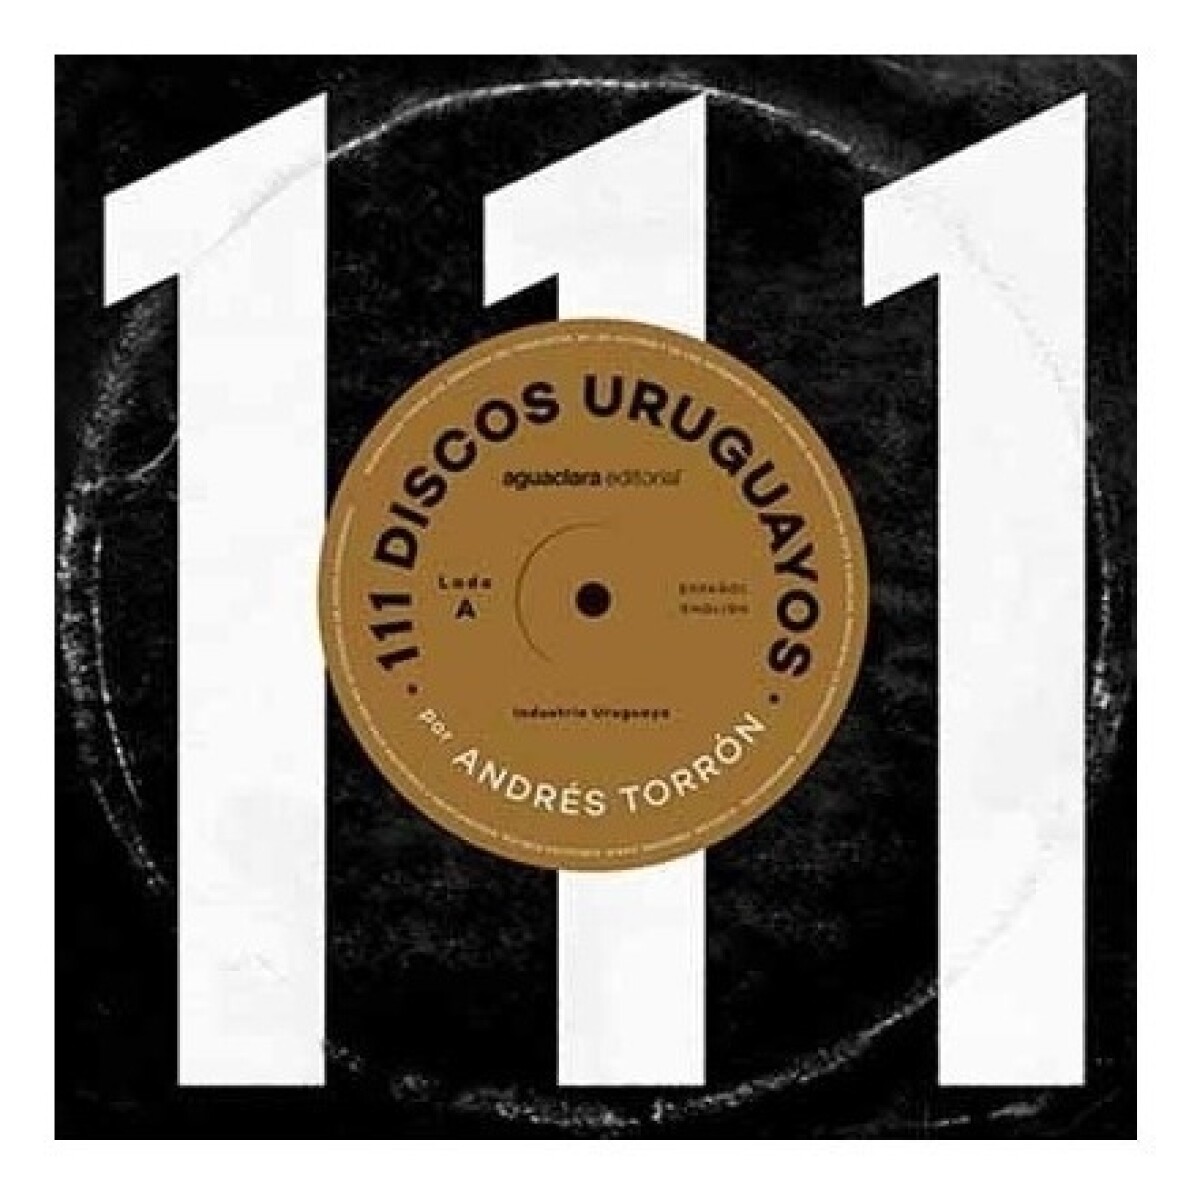 111 Discos Uruguayos 